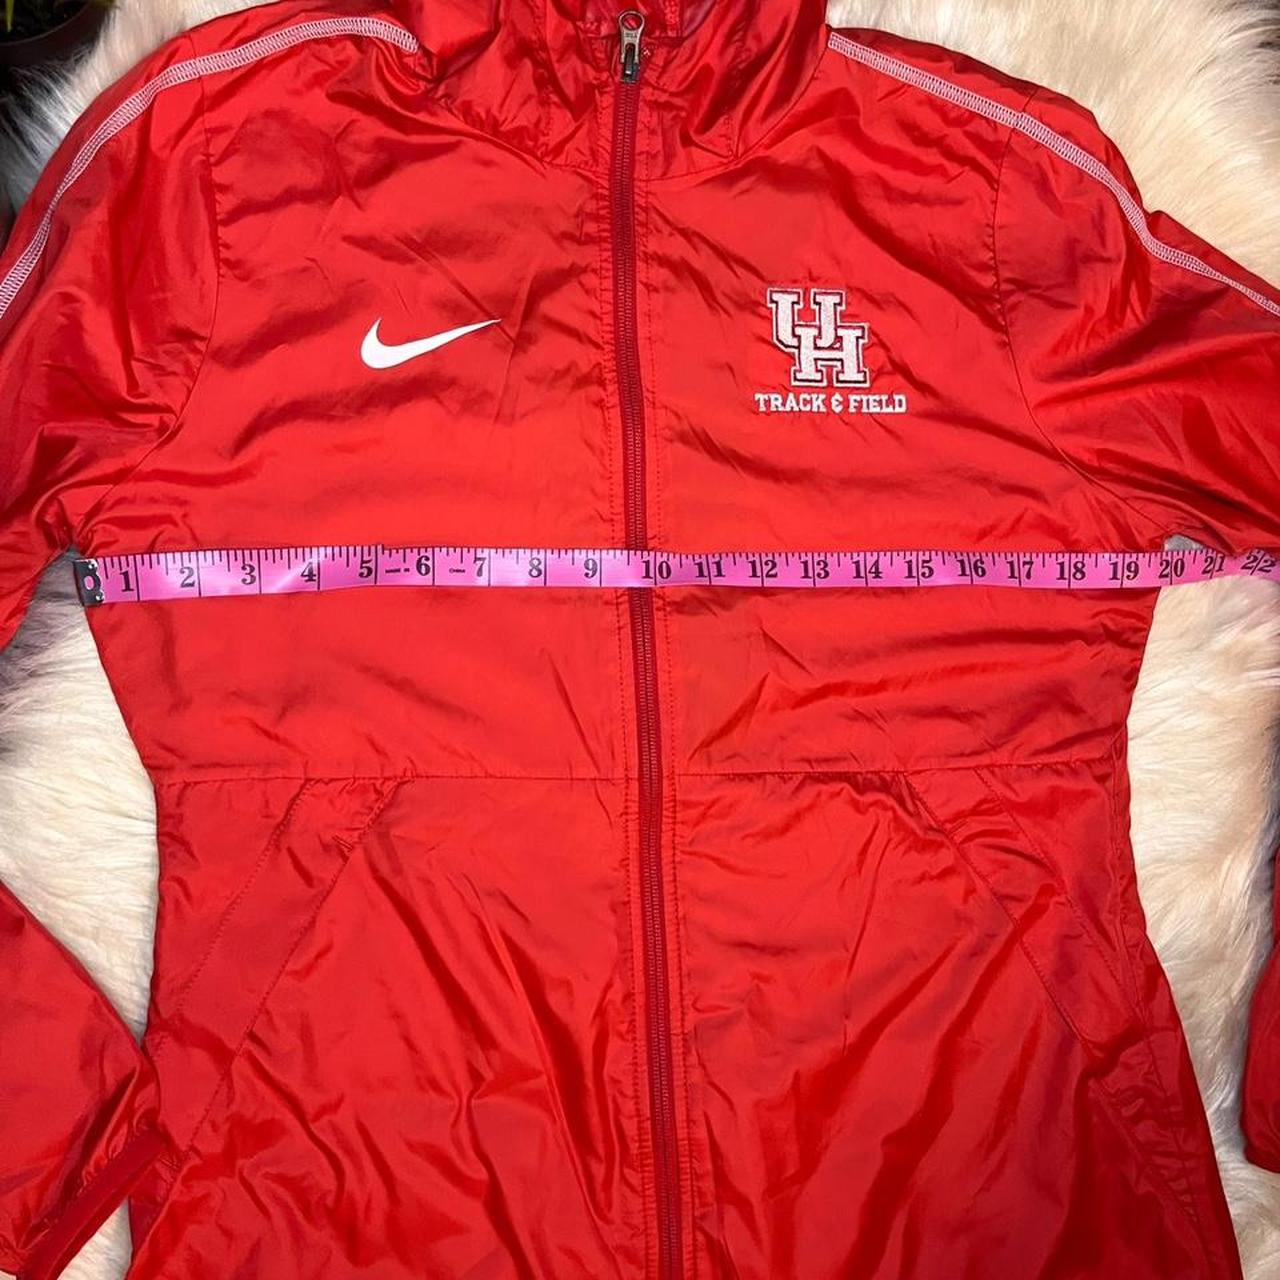 Nike Women's Red Jacket (4)